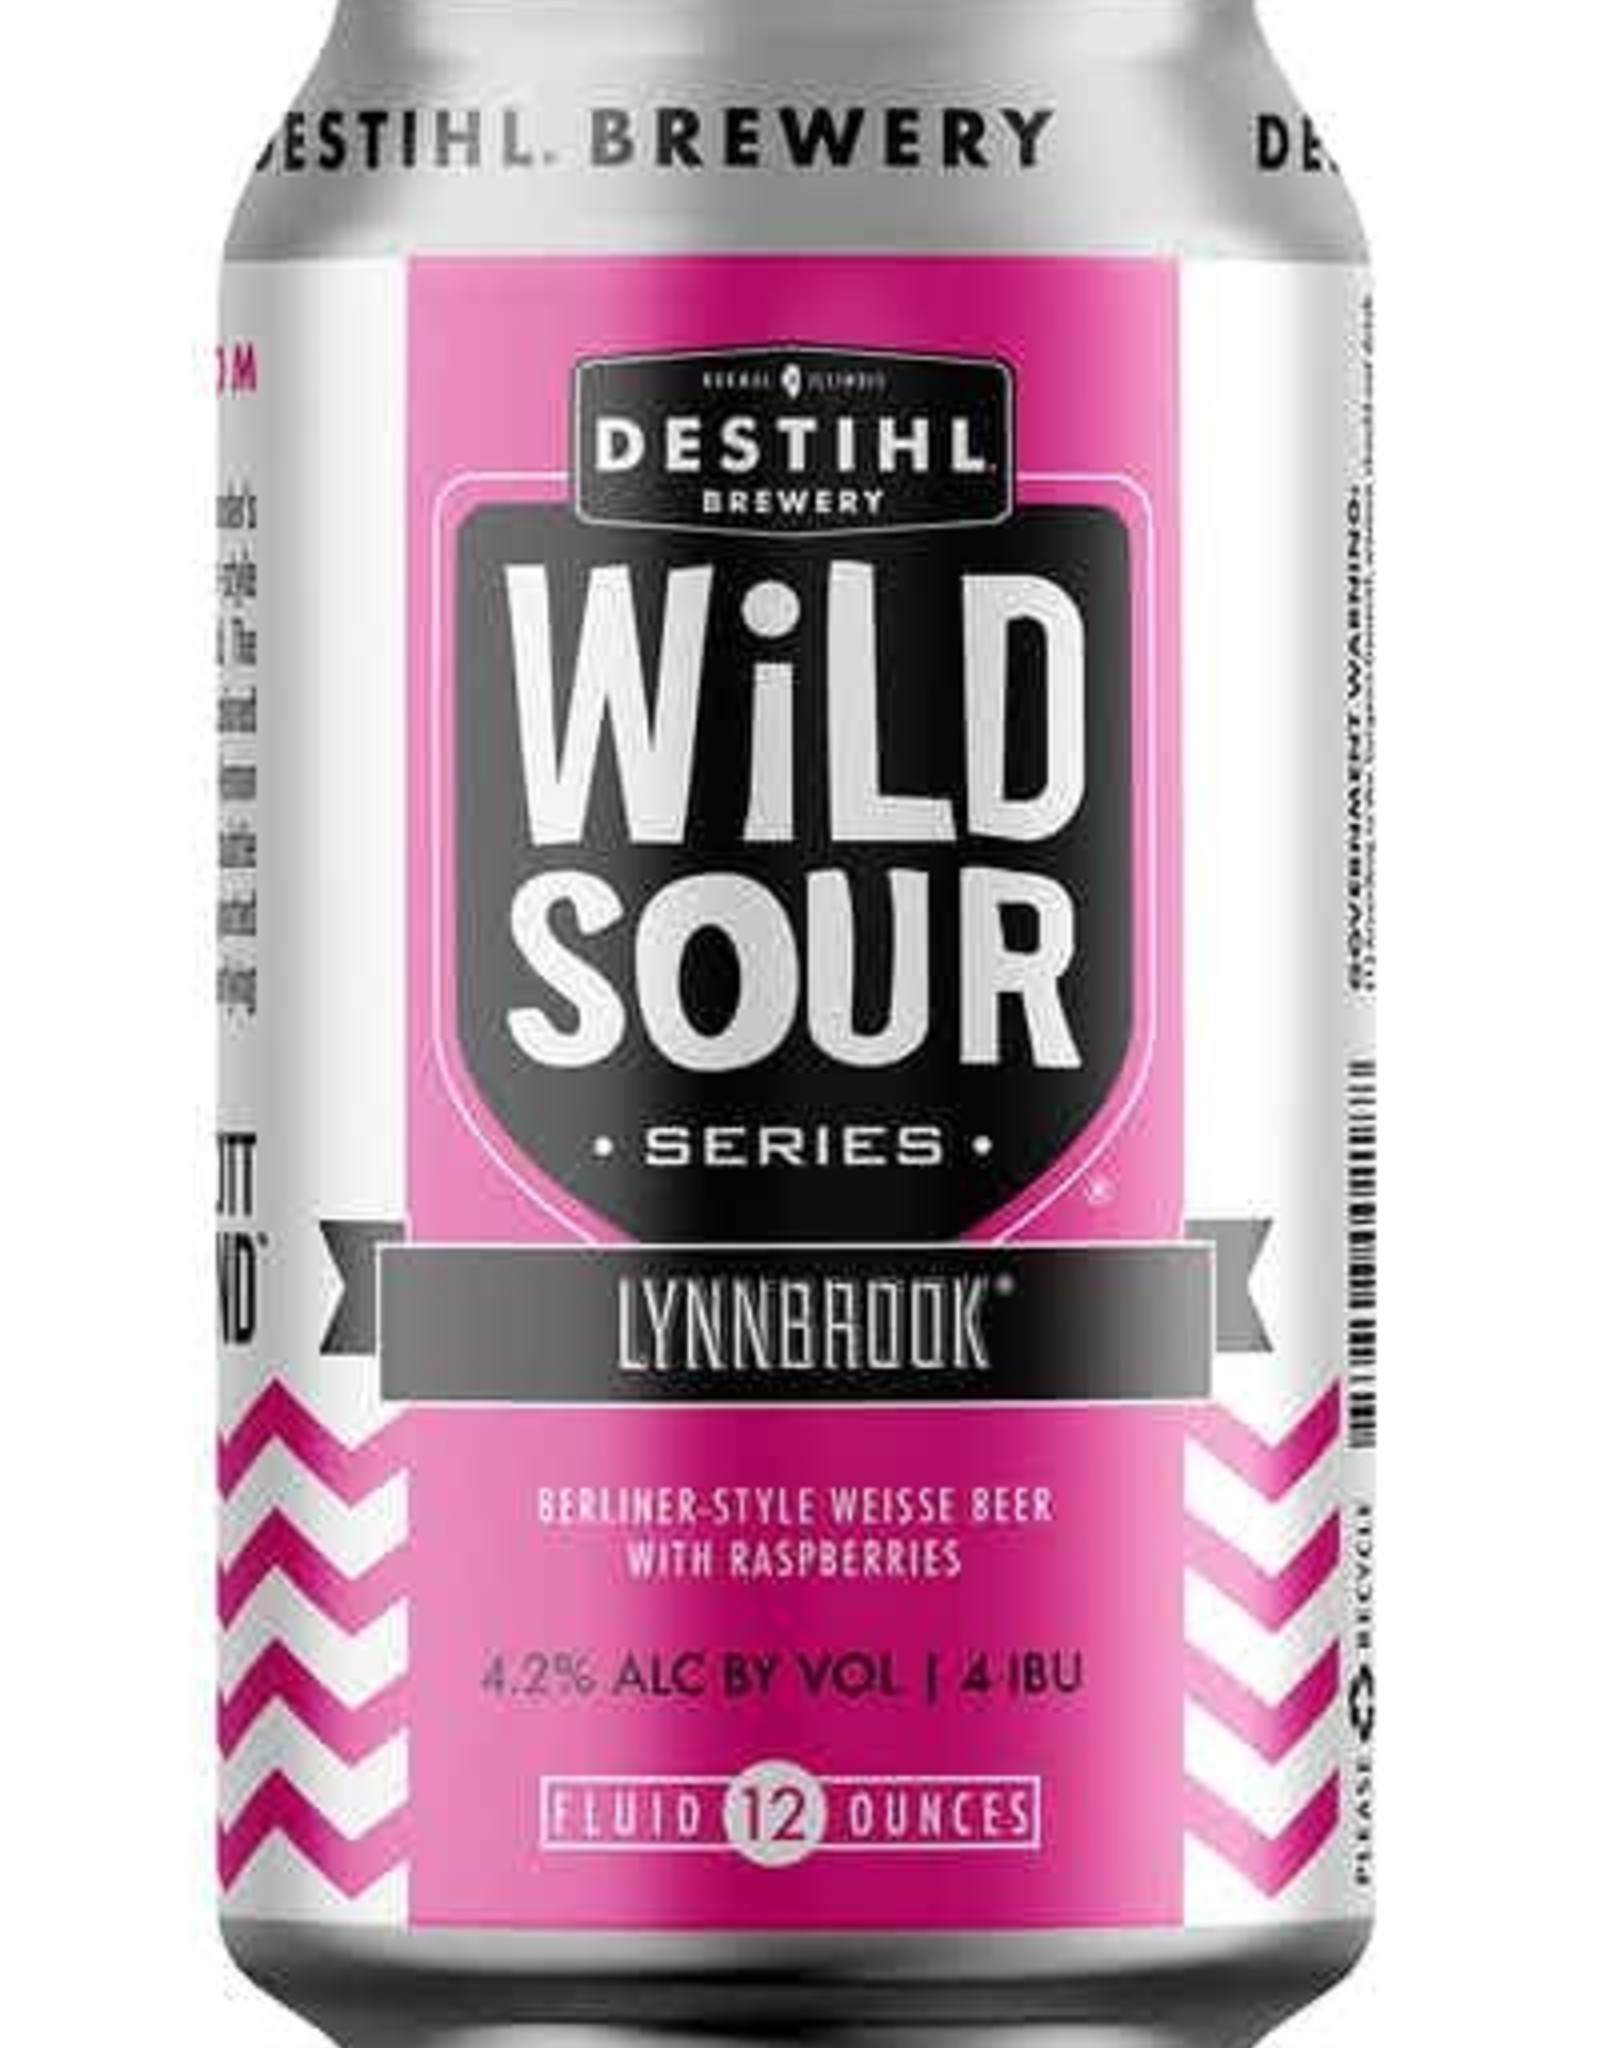 Destihl Wild Sour Lynnbrook 6 Pk cans